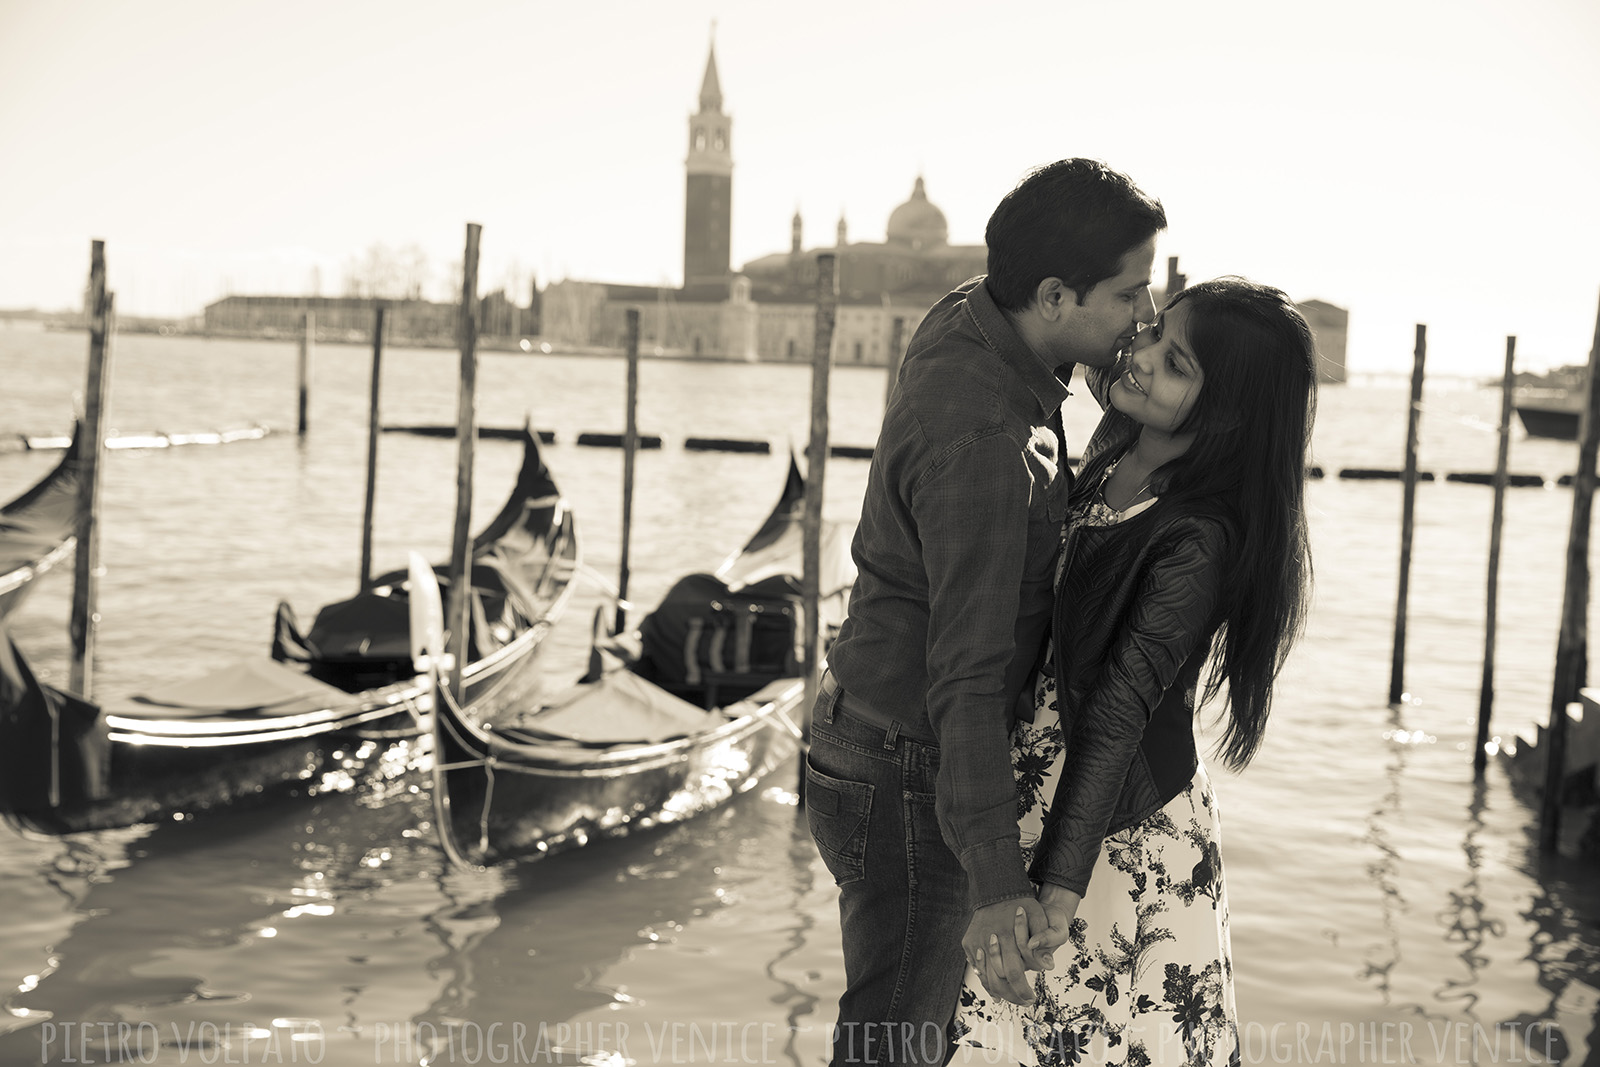 Fotografo a Venezia per servizio fotografico vacanza coppia ~ Foto romantiche e divertenti ~ passeggiata e giro gondola